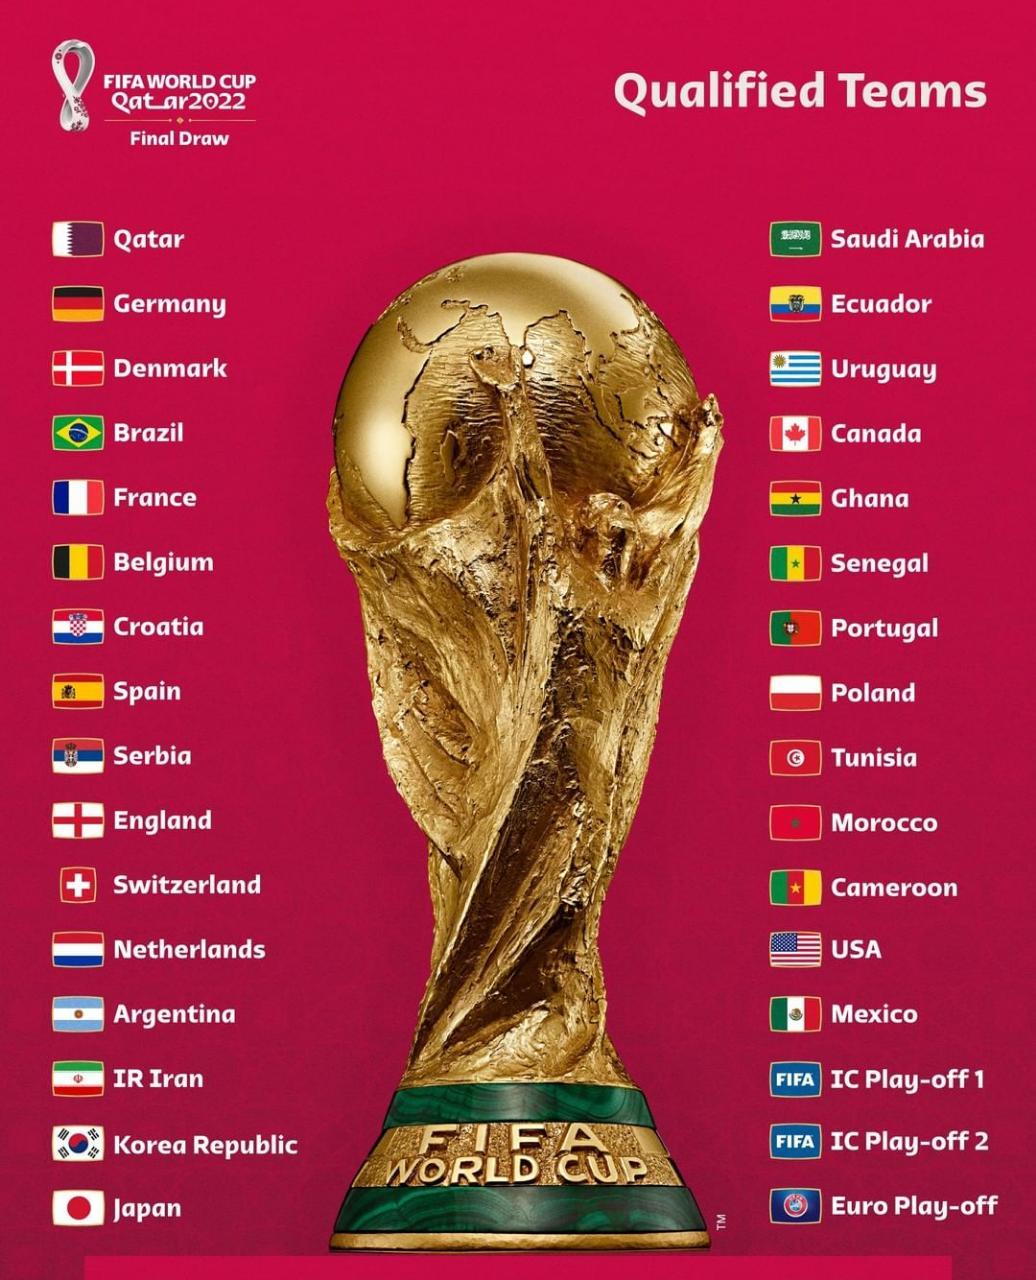 Jogos de Amanhã (29/11) na Copa 2022: Veja Duelos e Horários